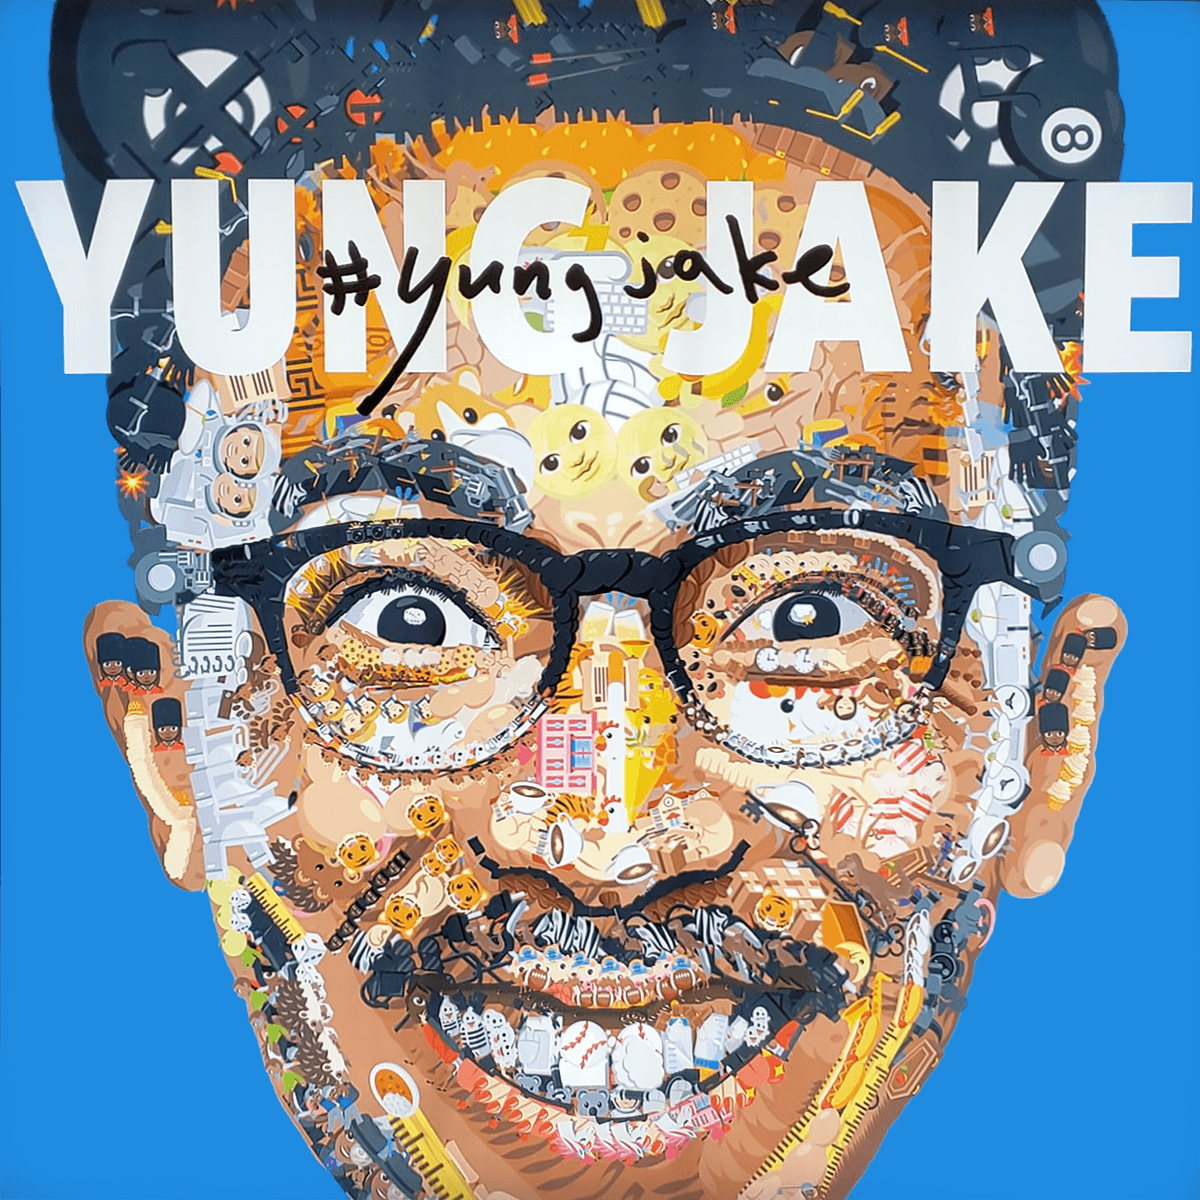 AT&T Yung Jake Collaboration